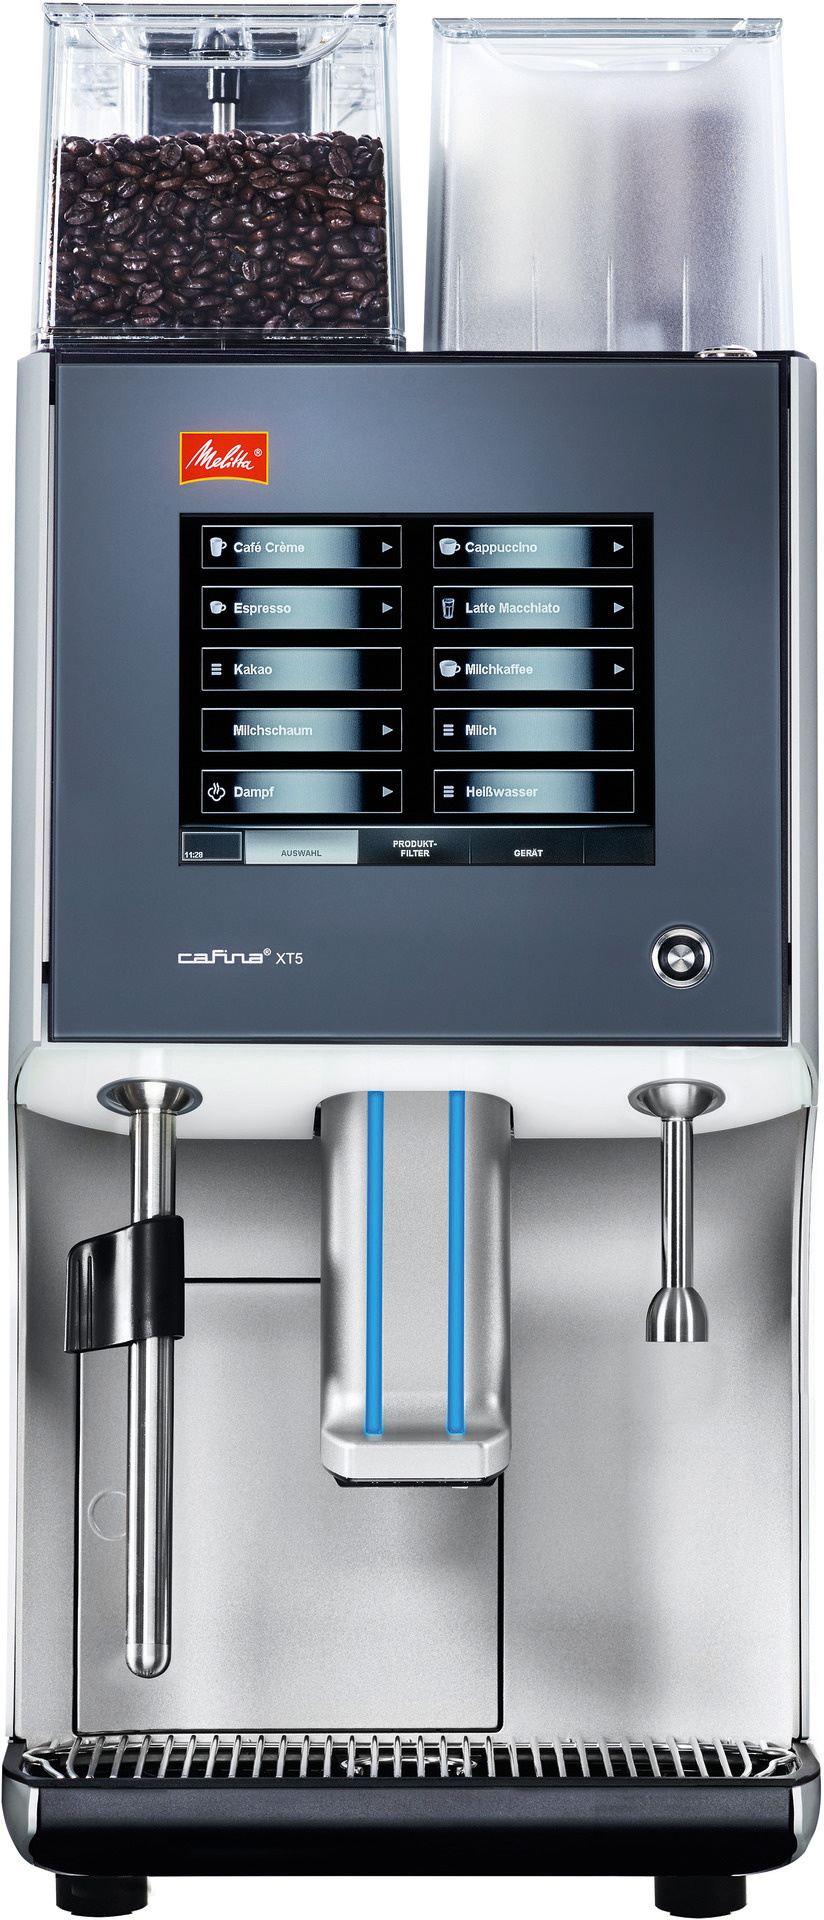 Kaffeevollautomat Cafina XT5 1-Mühle  bis zu 150 Tassen/h